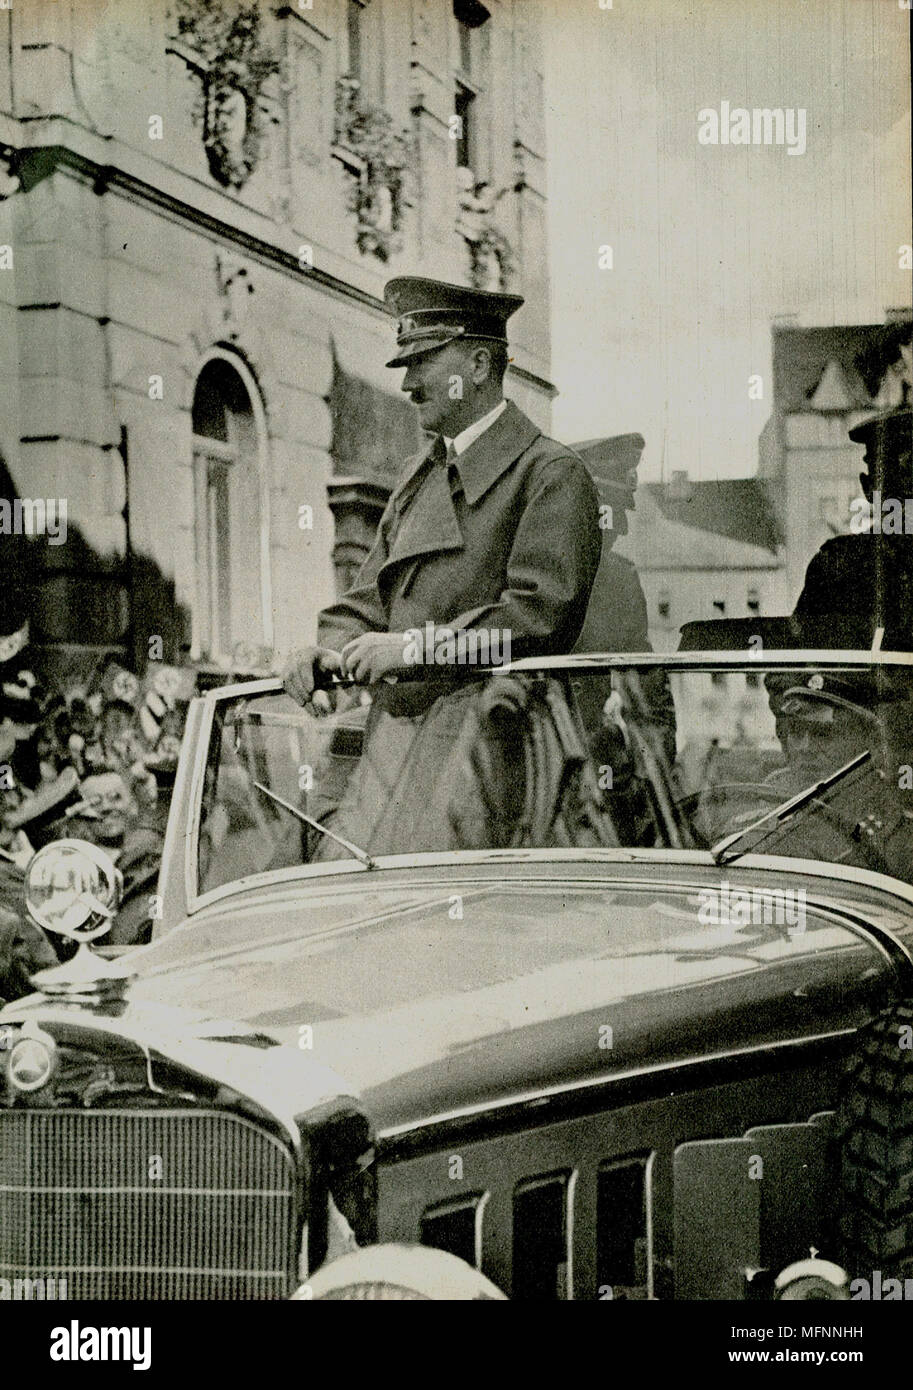 Adolf Hitler driven through a German city in an open Mercedes  c1936. Stock Photo